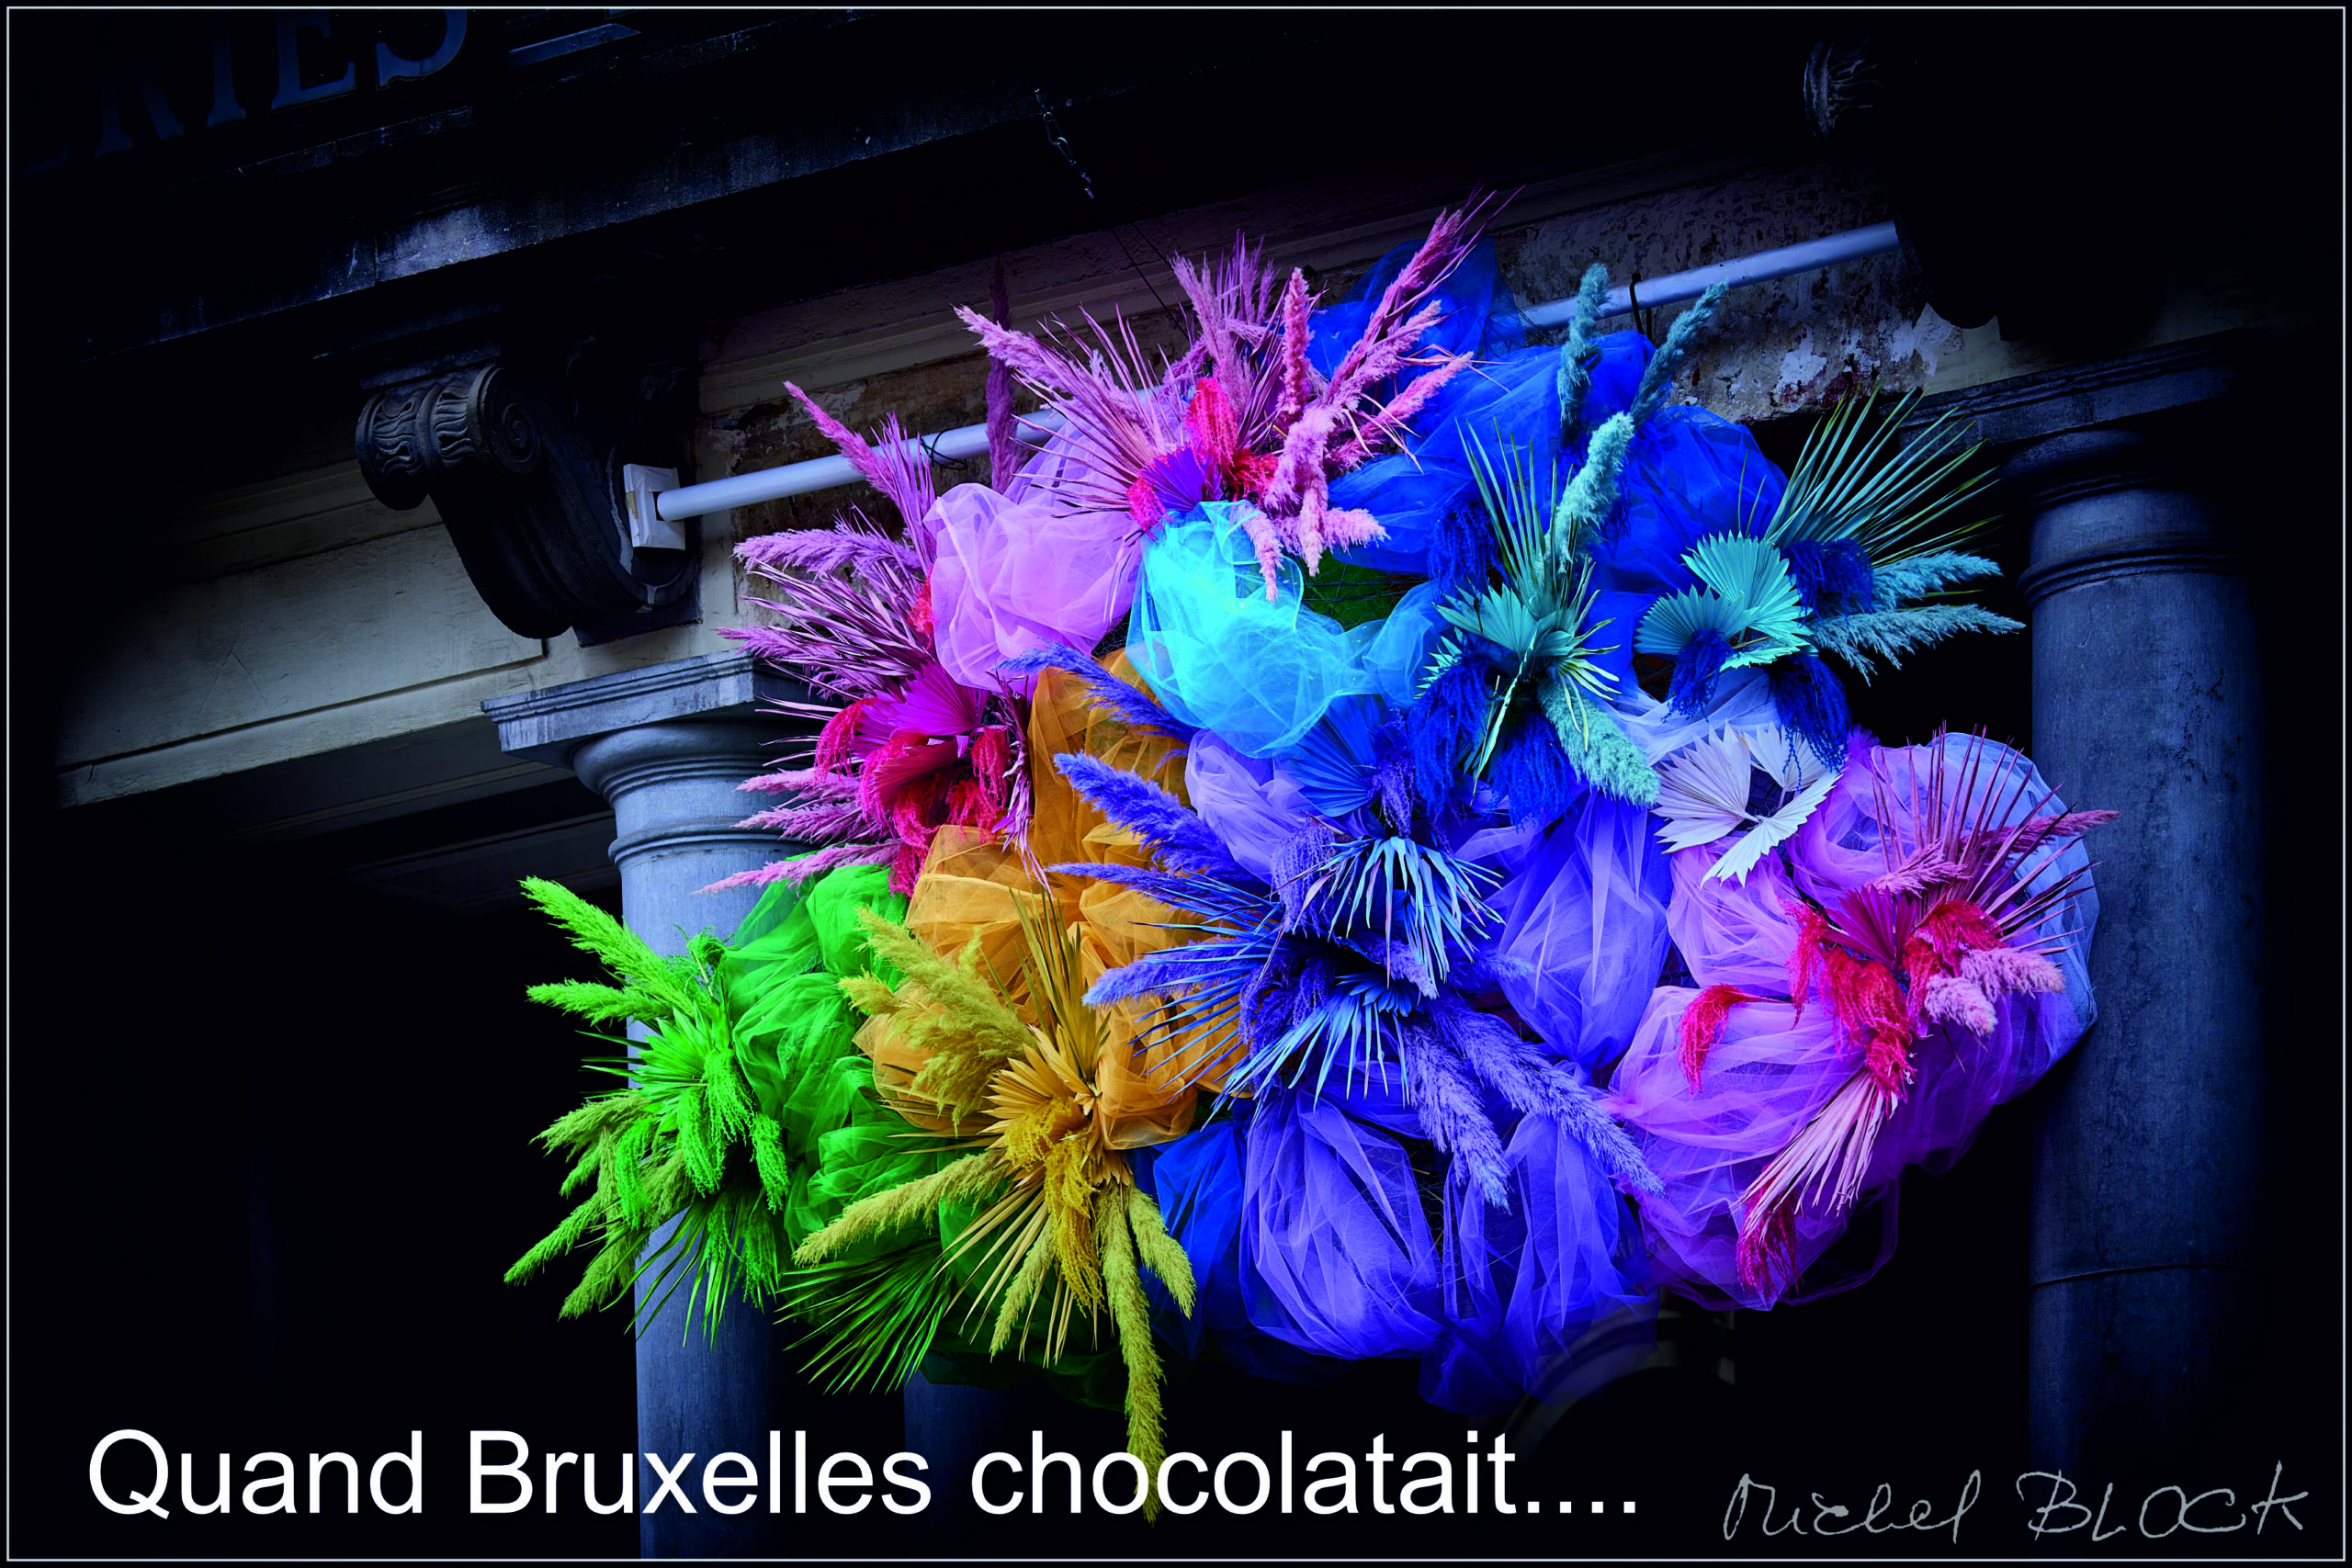 Quand Bruxelles bruxellait au Choco …